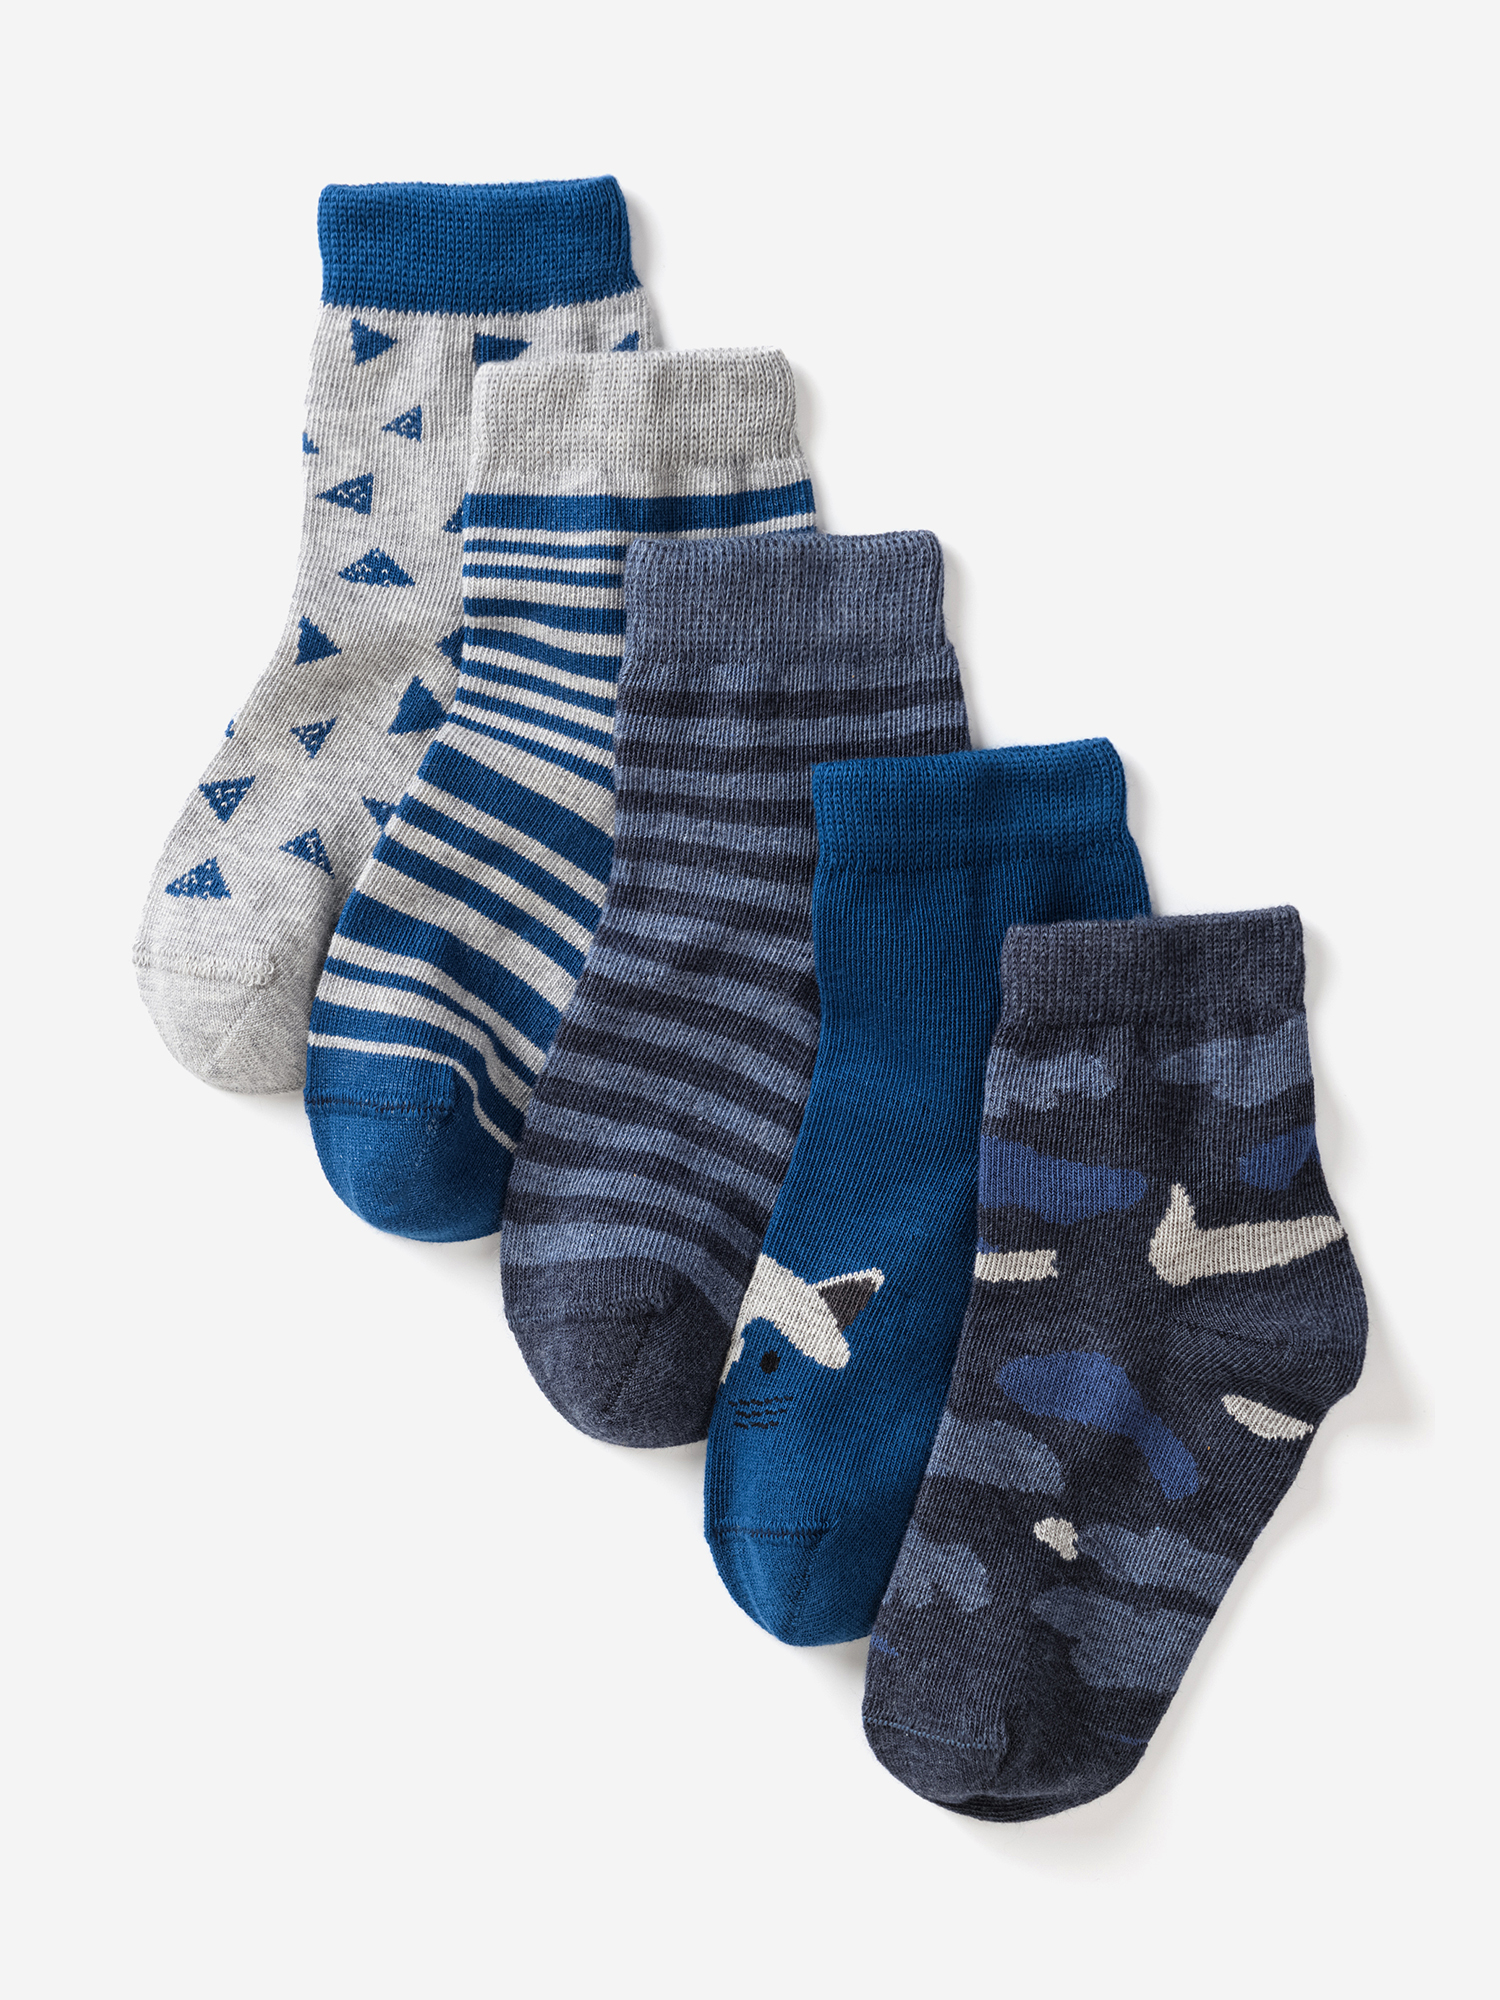 Носки для детей малышей хлопок набор 5 пары Artie, Синий